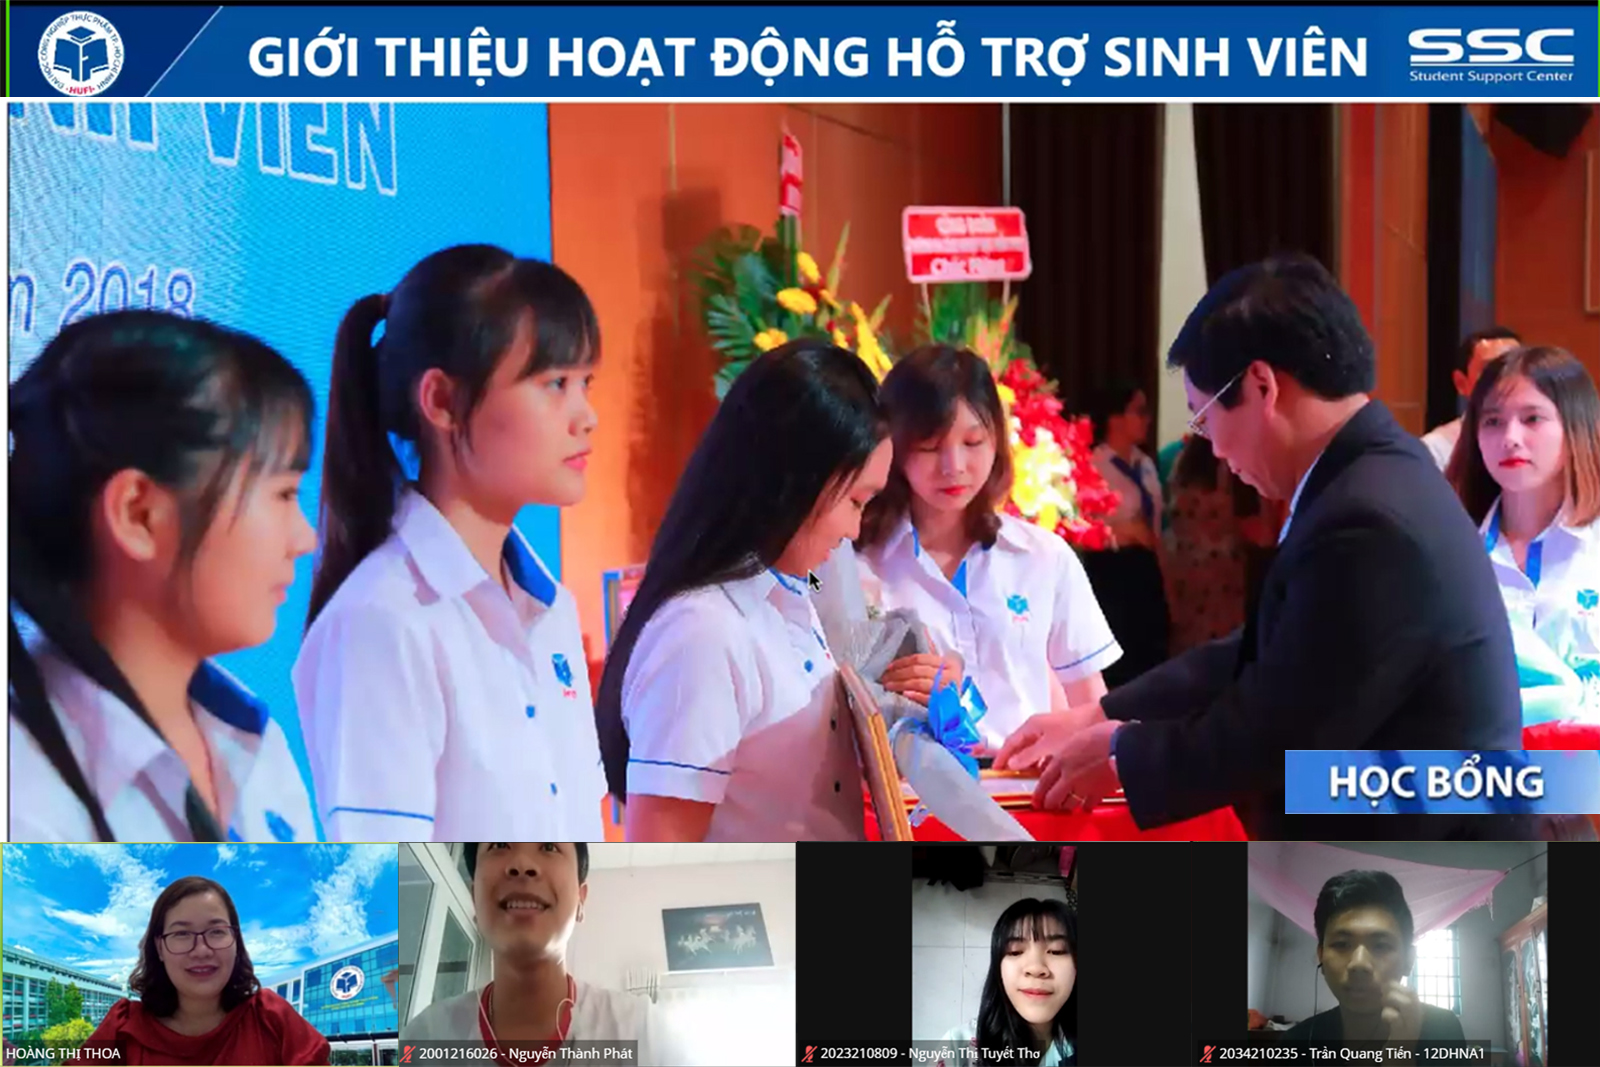 /tttstt/images/tin-tuc-hoat-dong/sinh-hoat-cong-dan-dau-khoa-chuyen-de-“he-thong-hoat-dong-ho-tro-sinh-vien”.jpg Buổi sinh hoạt công dân đầu khóa chuyên đề “Hệ thống hoạt động hỗ trợ sinh viên”